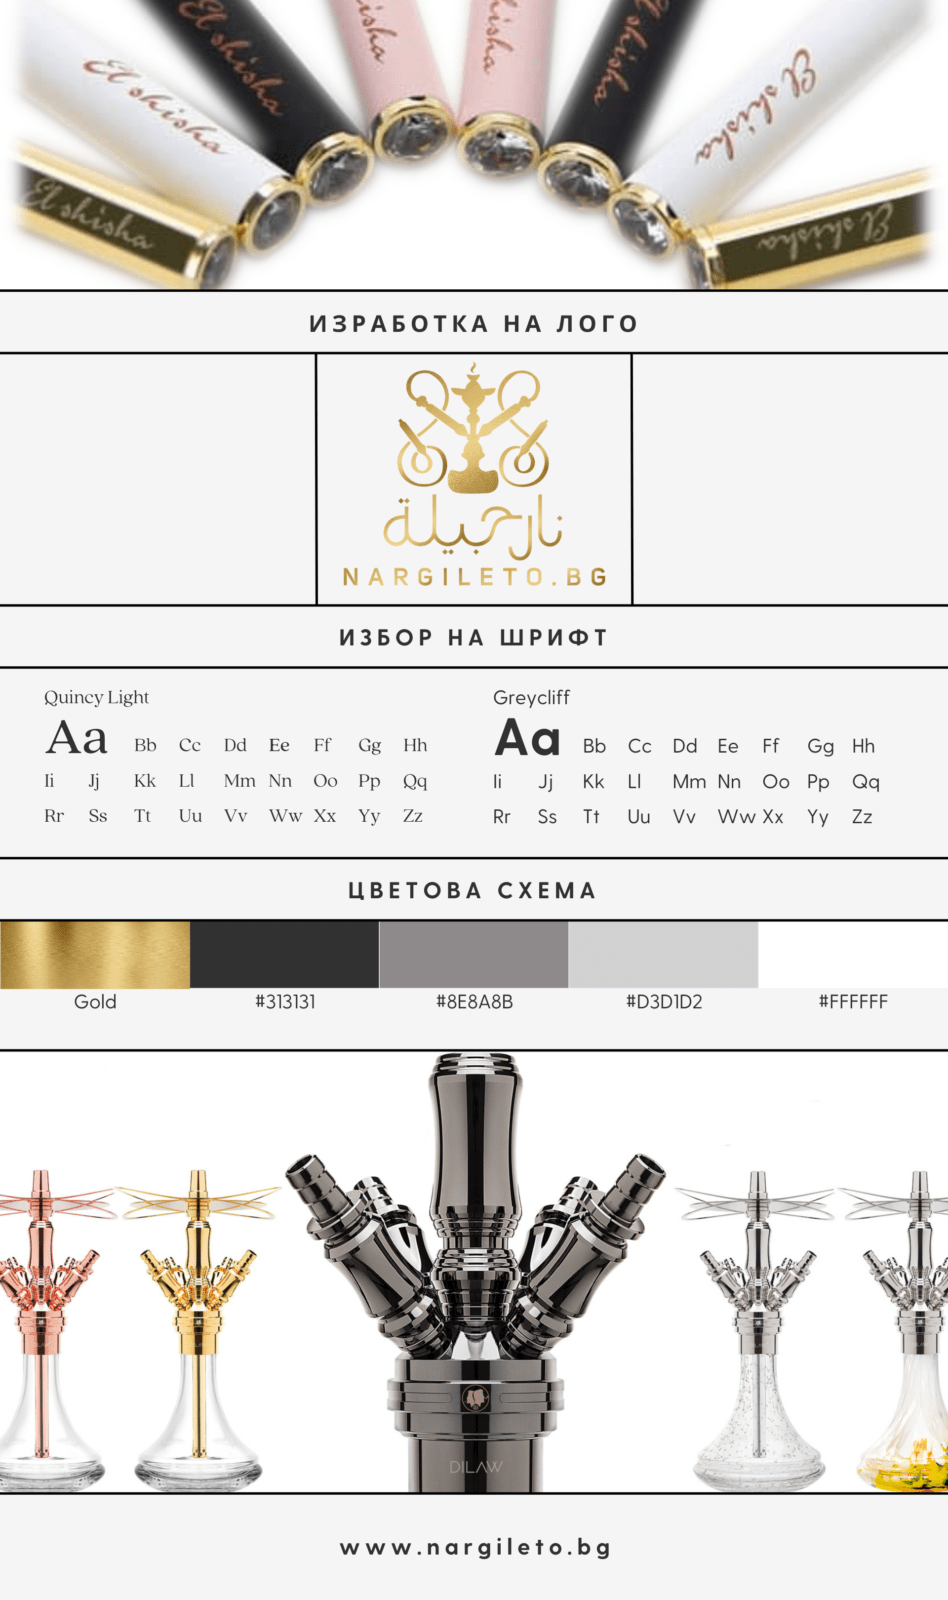 Проект: Изработка и дизайн на лого, визуална идентичност за онлайн магазин за наргилета